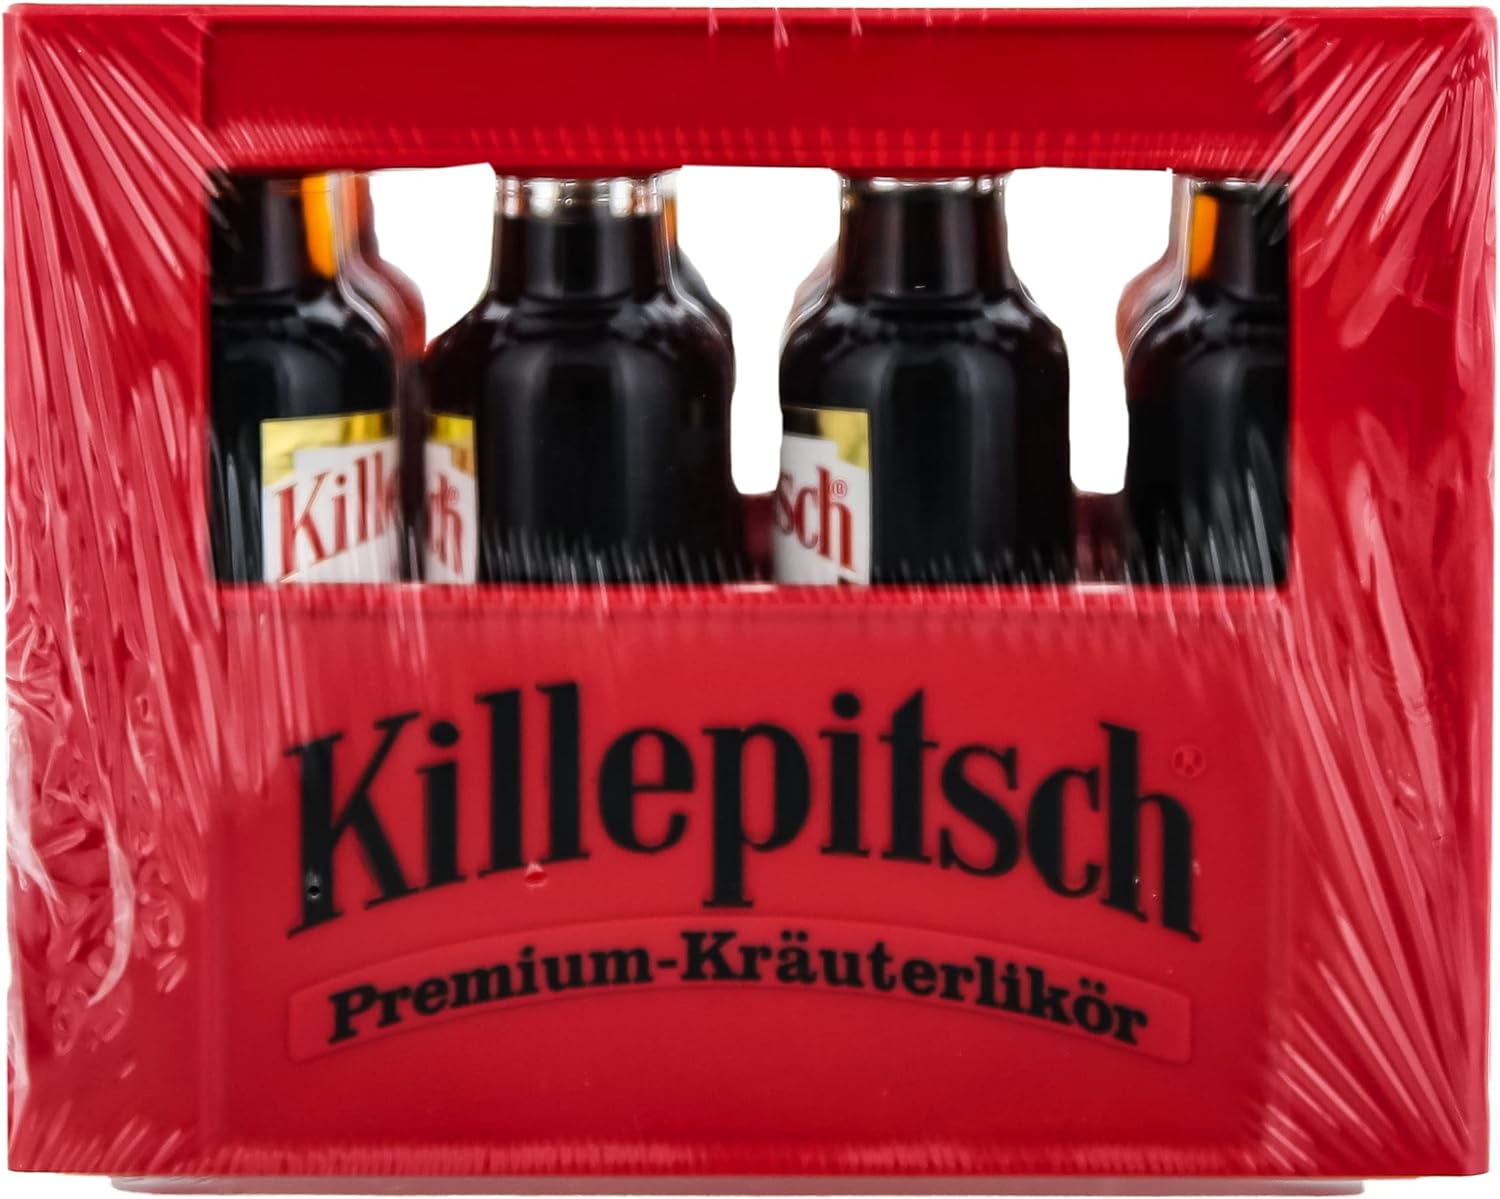 Premium-Kräuterlikör | Miniature//12 Bundesbrand L Killepitsch | 42% x | Likör Spirituosen Kräuterlikör | 0,02